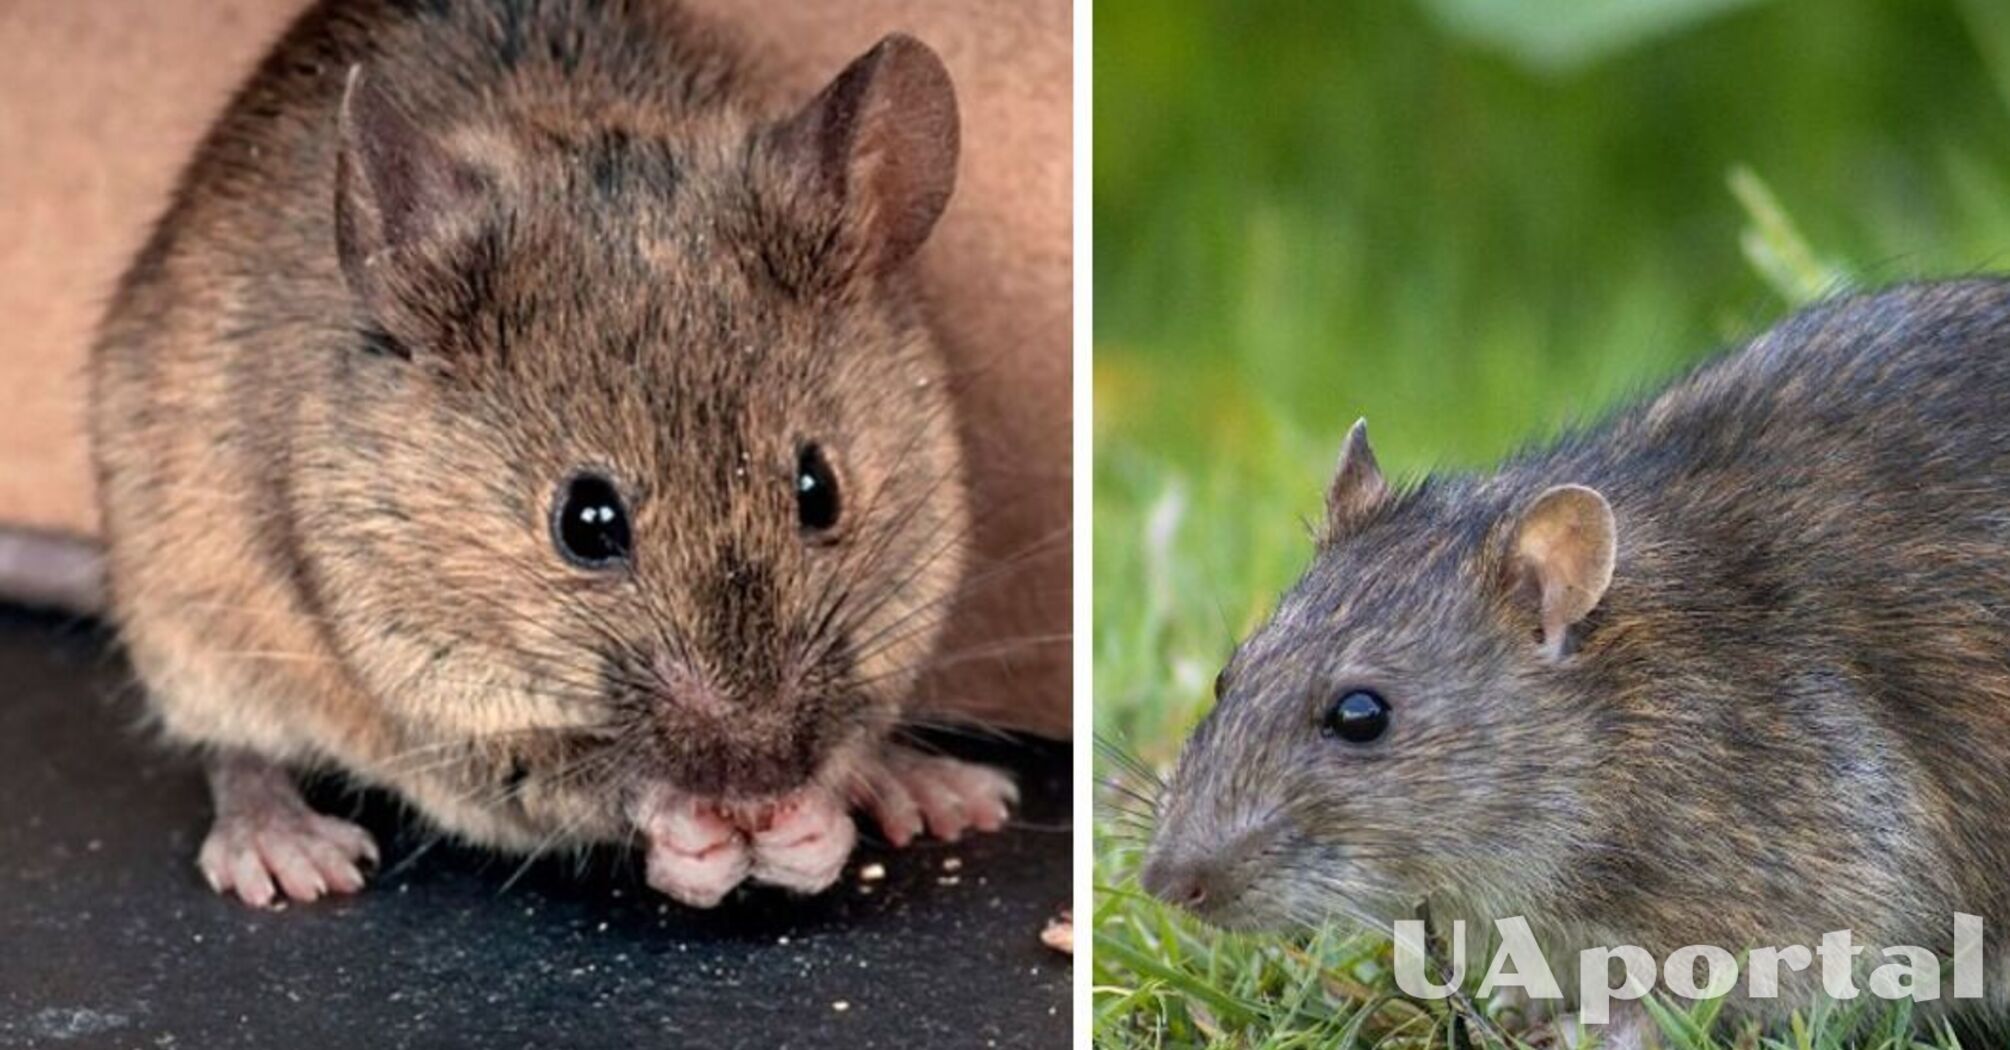 Борьба с мышами на огороде: что отпугивает грызунов